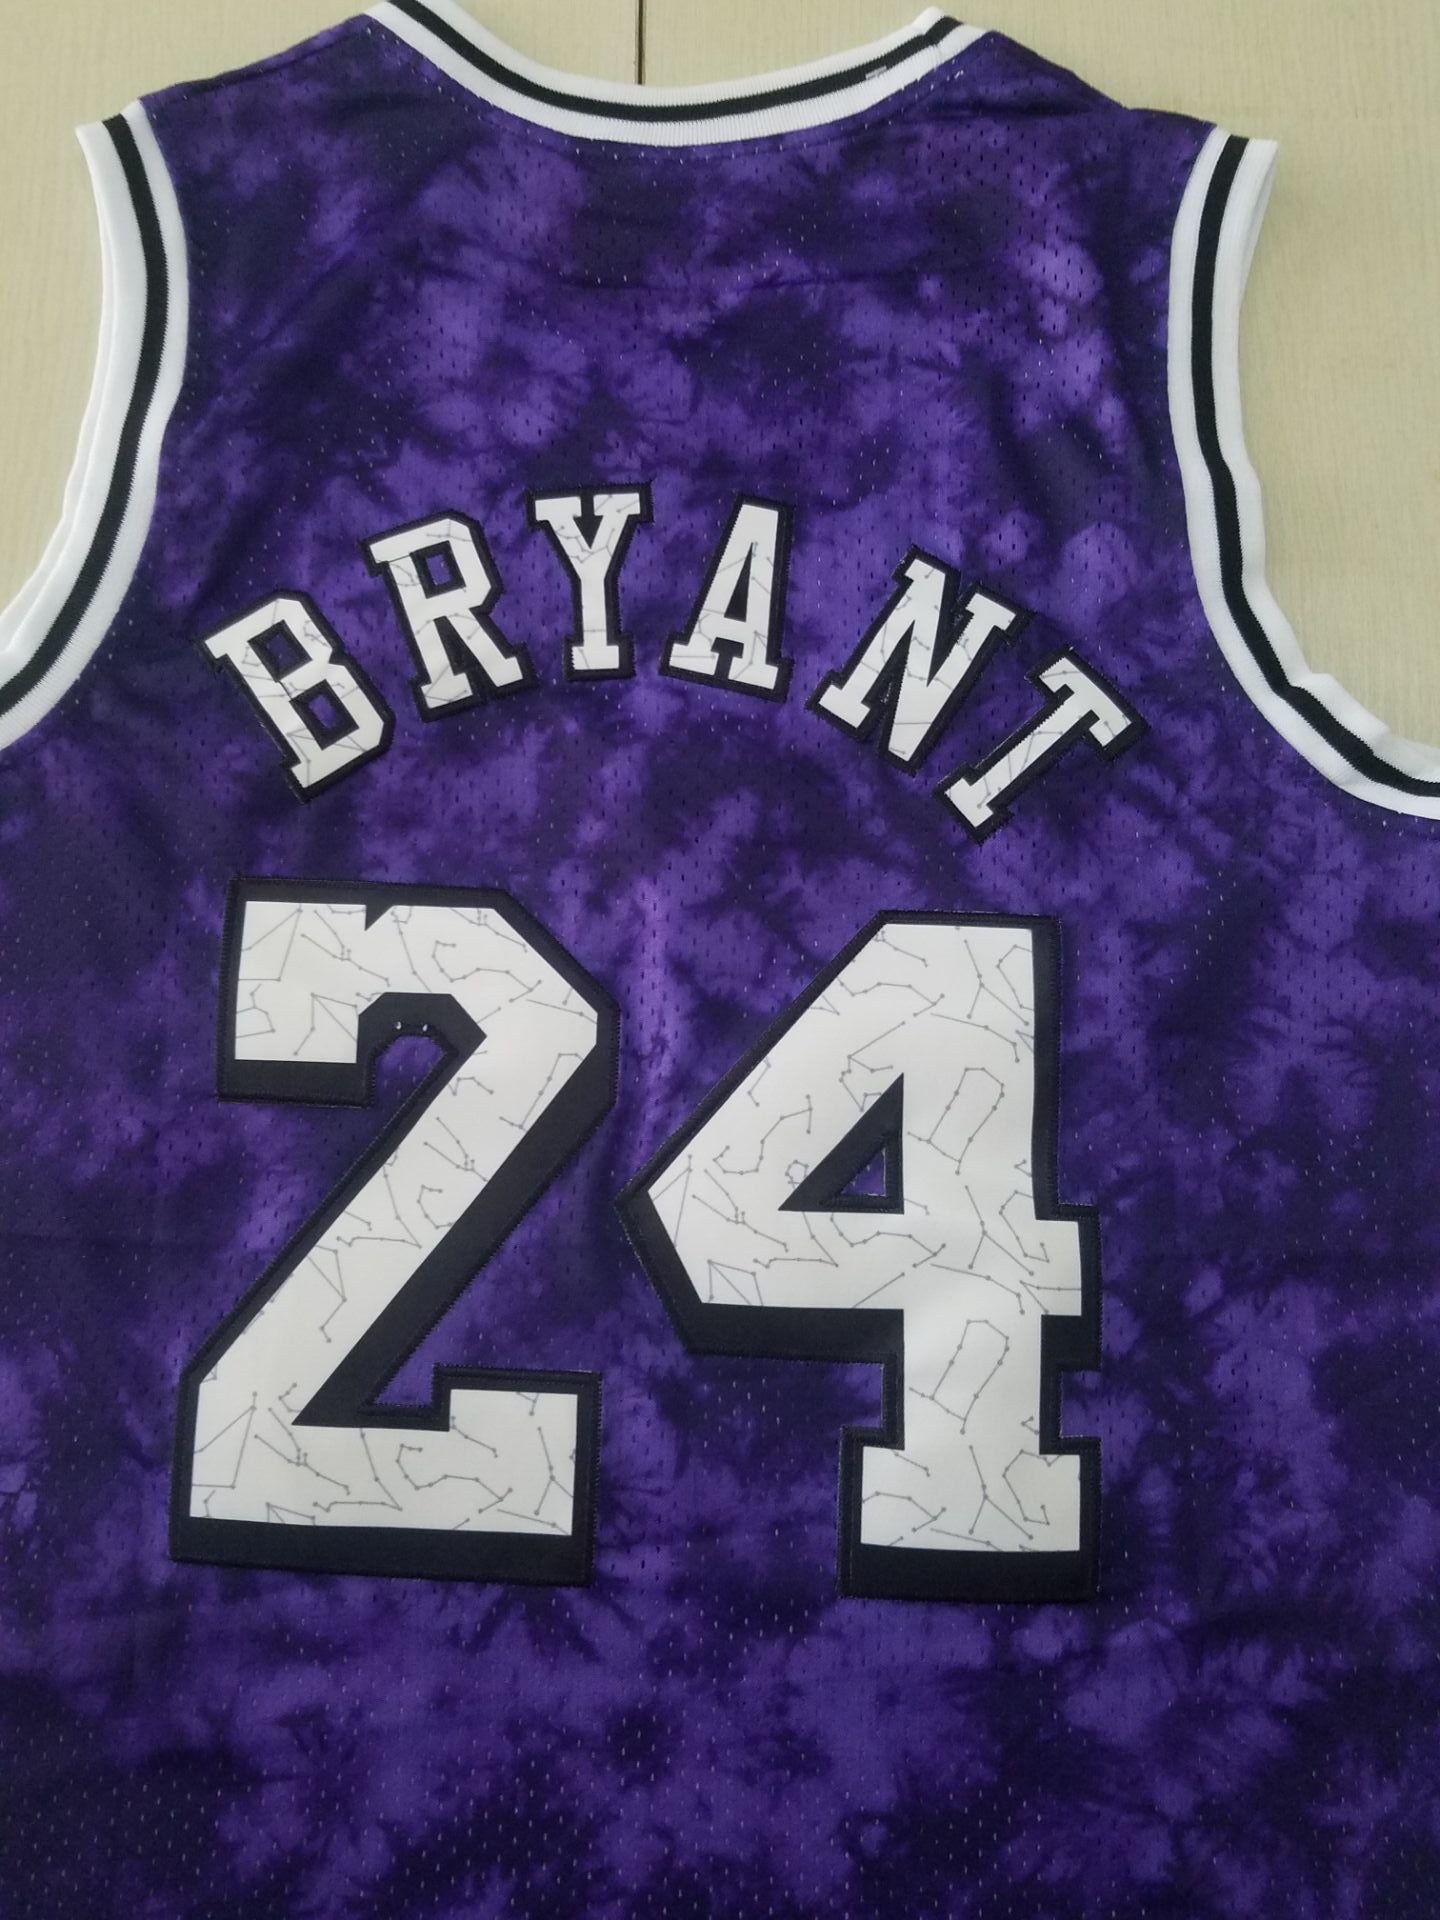 Men's Los Angeles Lakers Kobe Bryant #24 Purple Galaxy Swingman Jersey